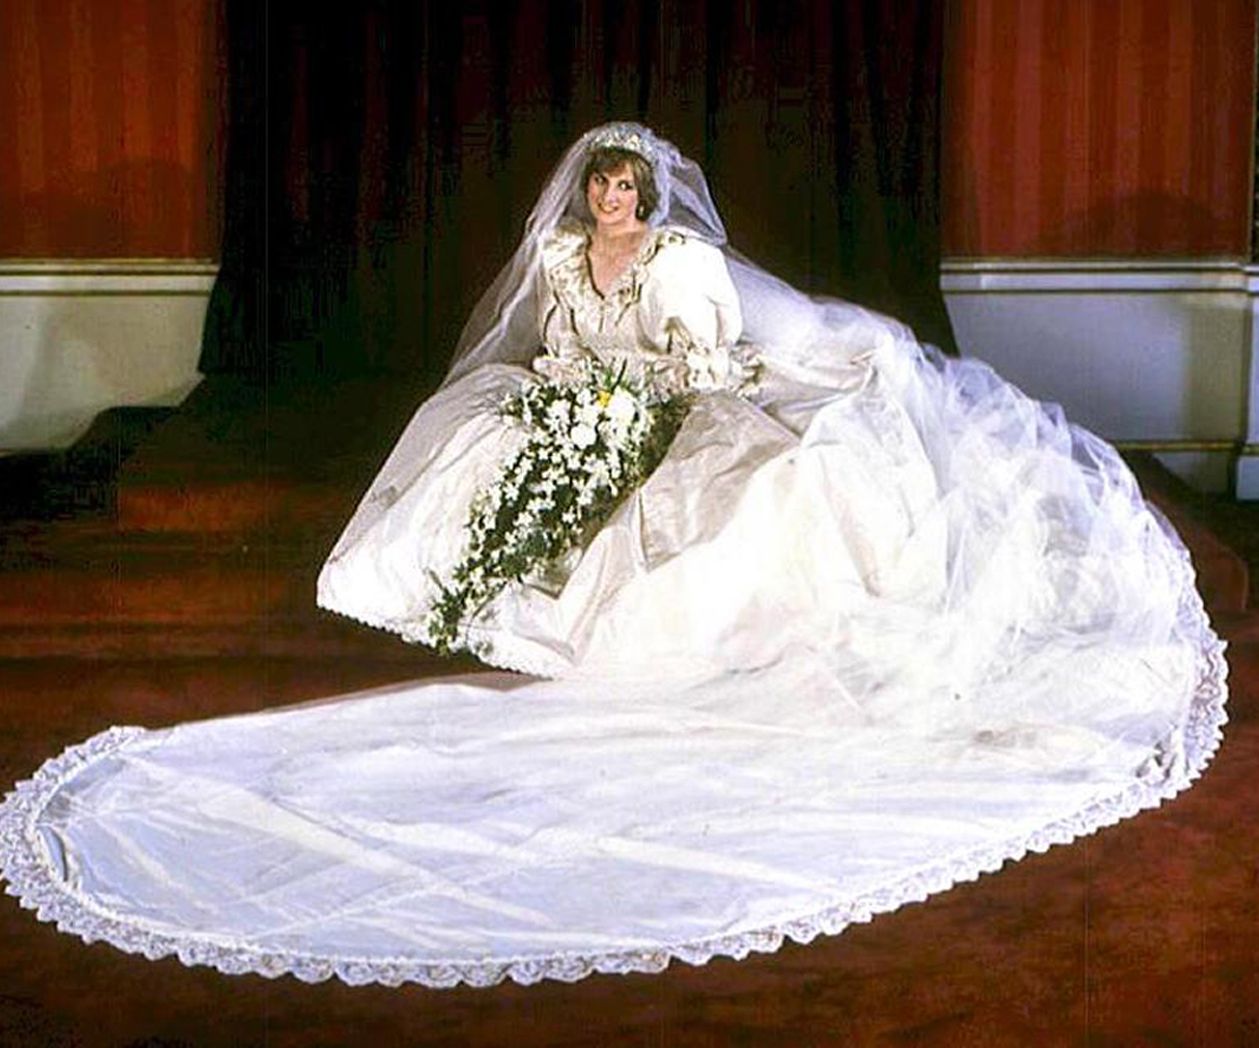 Teuerste Hochzeitskleider: Prinzessin Diana - 92.000 €